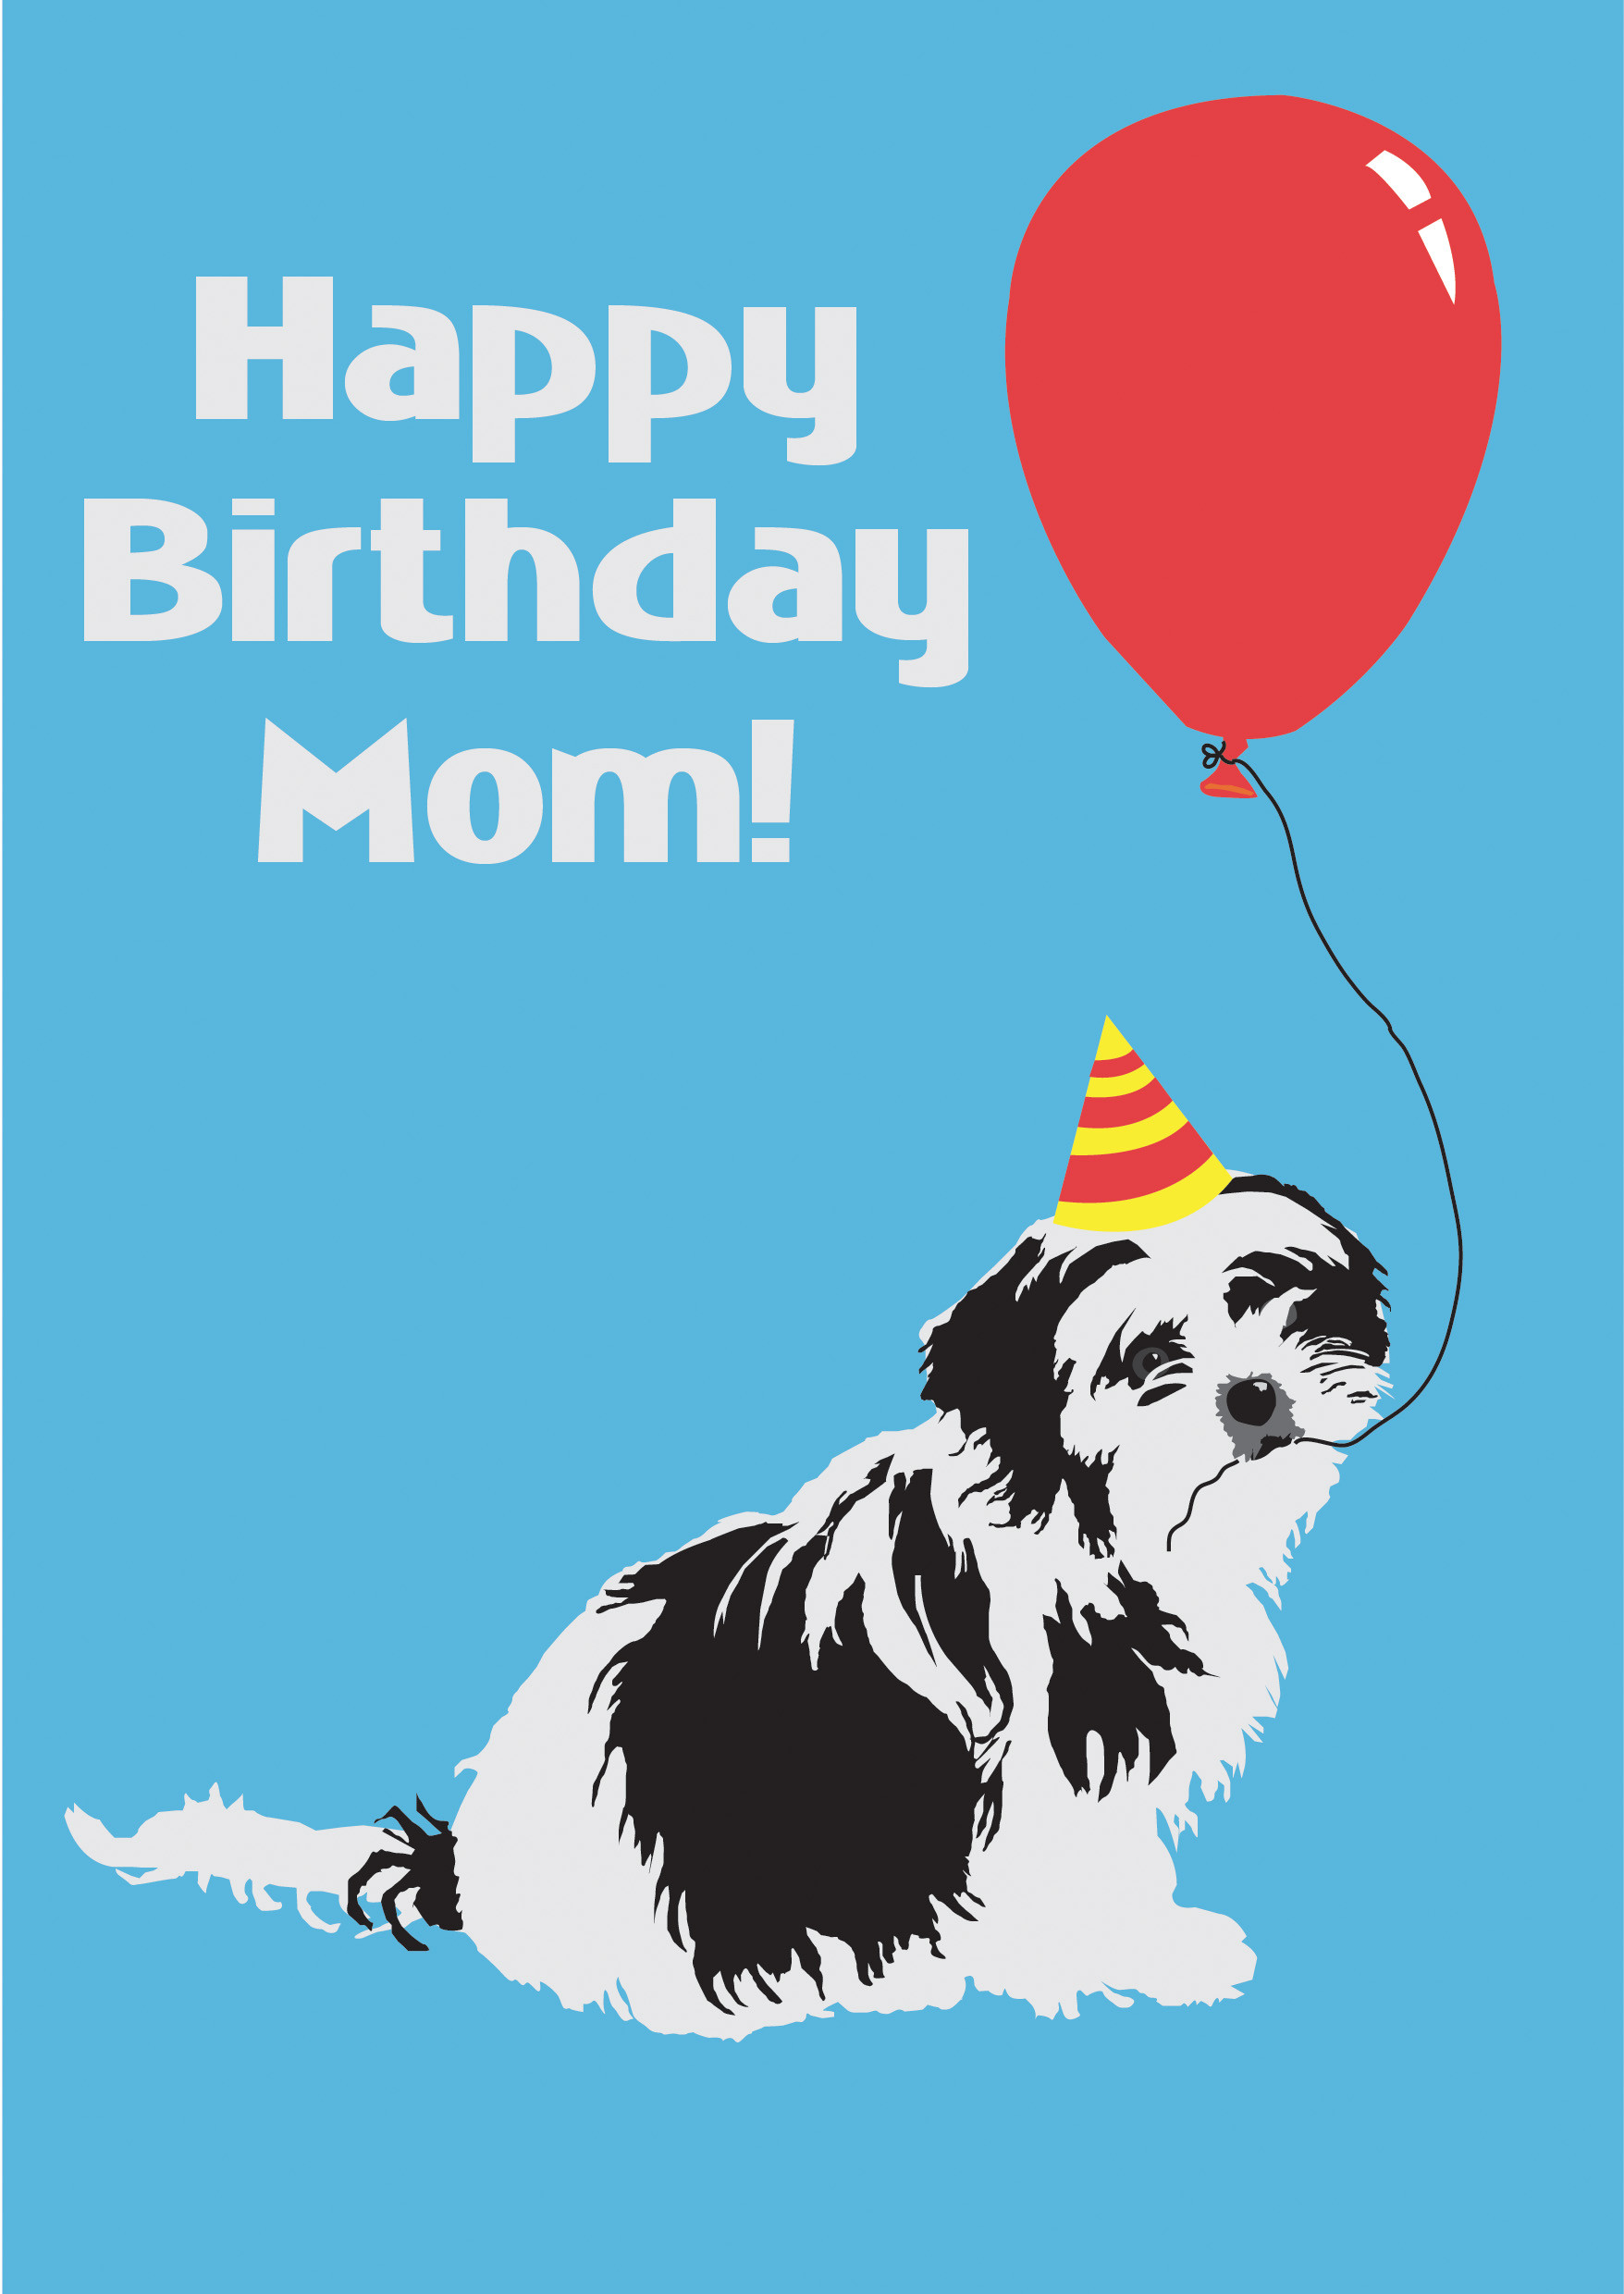 Happy Birthday Funny Mom
 Blog